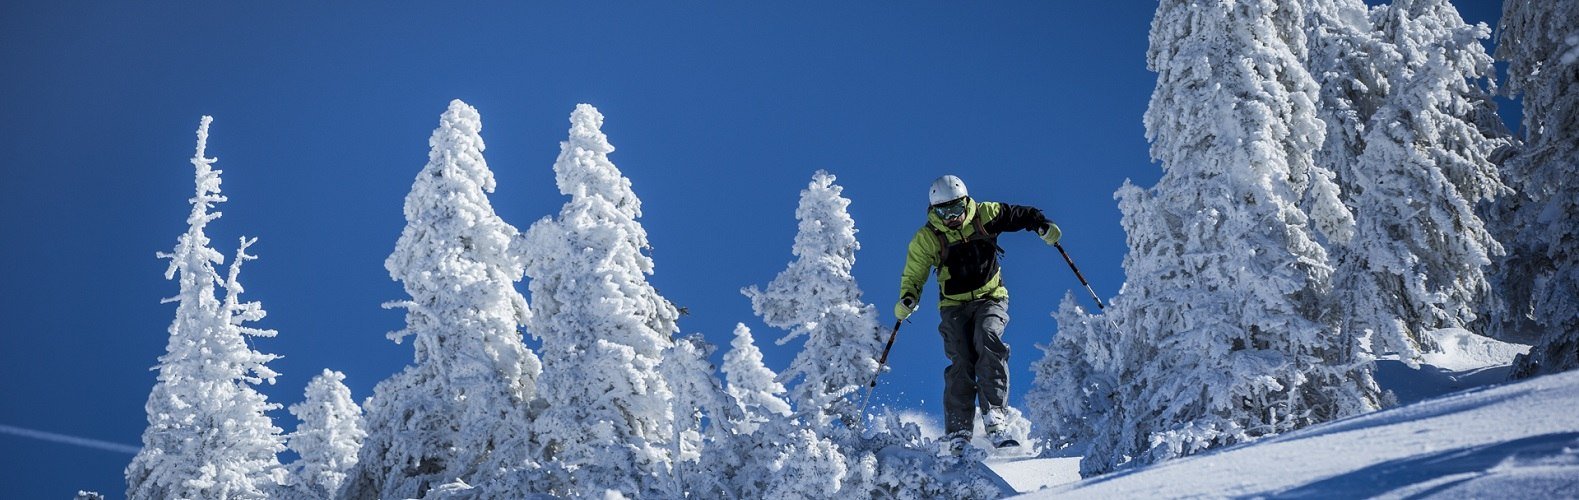 Freerider im Skigebiet Wendelstein, © Alpenregion Tegernsee Schliersee e.V., Hansi Heckmair